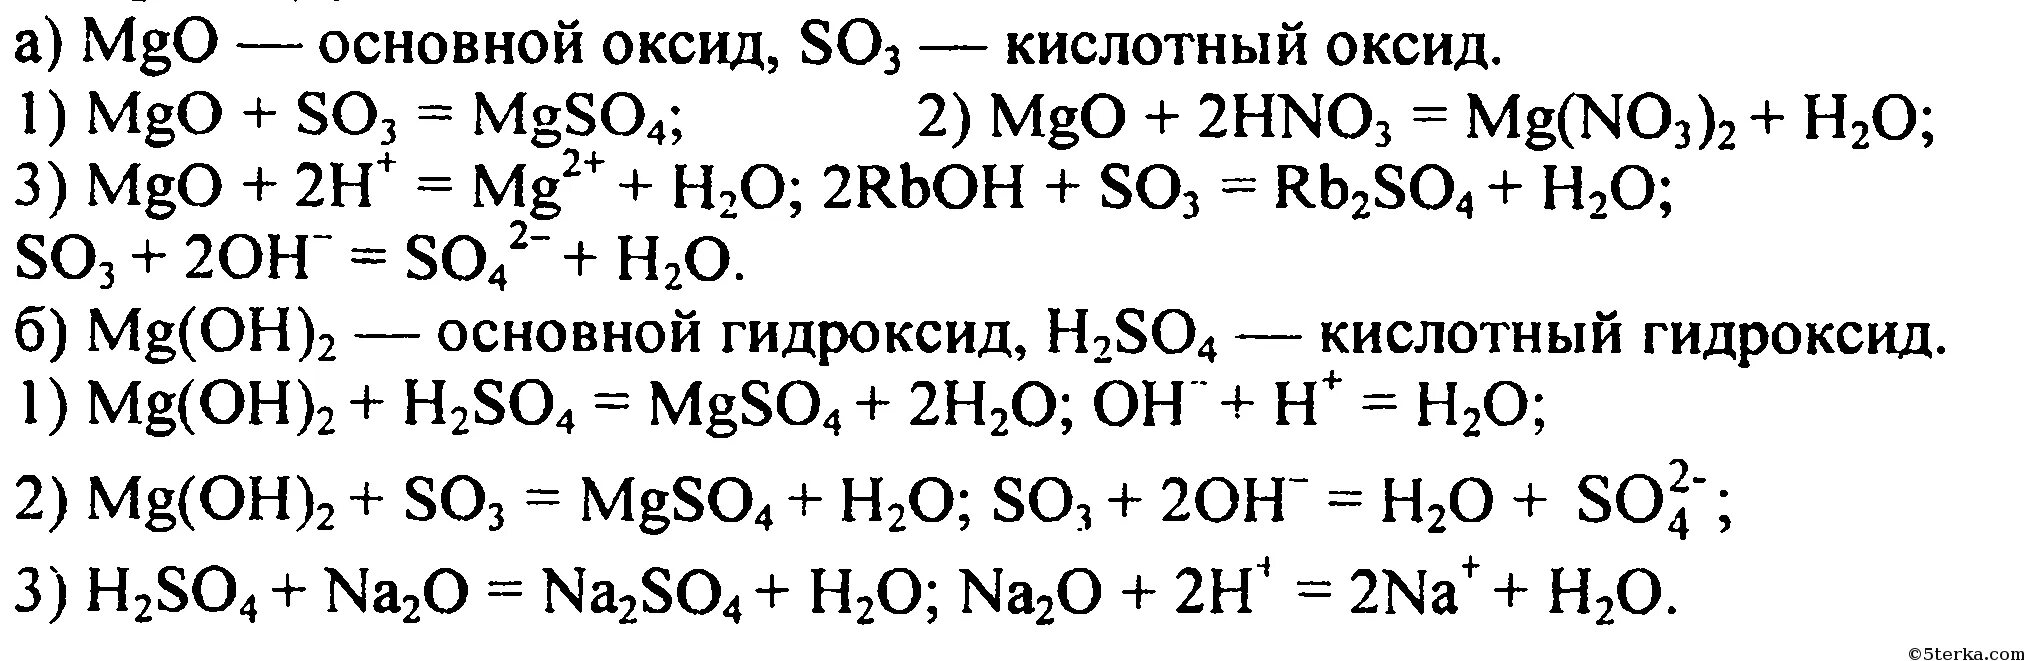 Уравнение химической реакции MGO И so3. Химические уравнения магний хлор 2. Цепочка реакций с магнием. MGO+h2so4 уравнение реакции. Составьте уравнение реакций mgo hcl